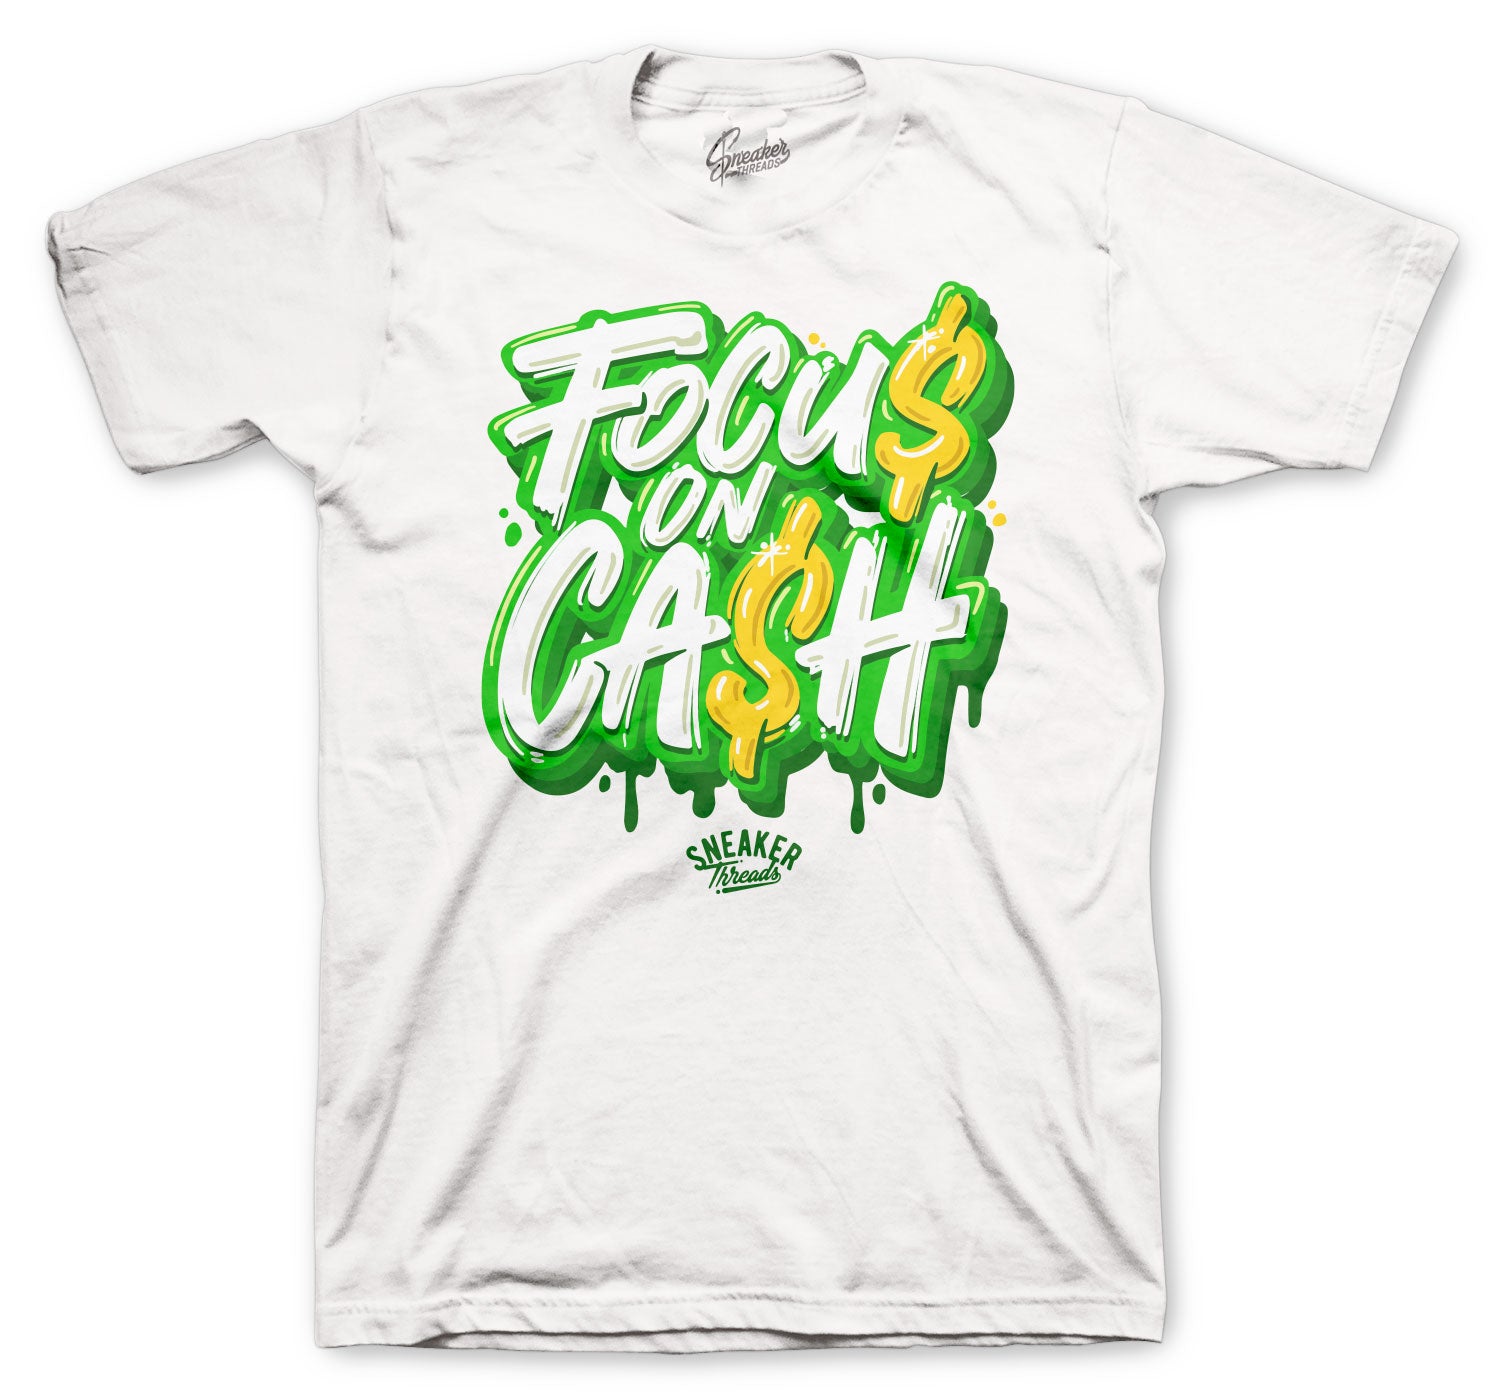 Retro 4 Green Metallic Shirt - Focus On $ - White